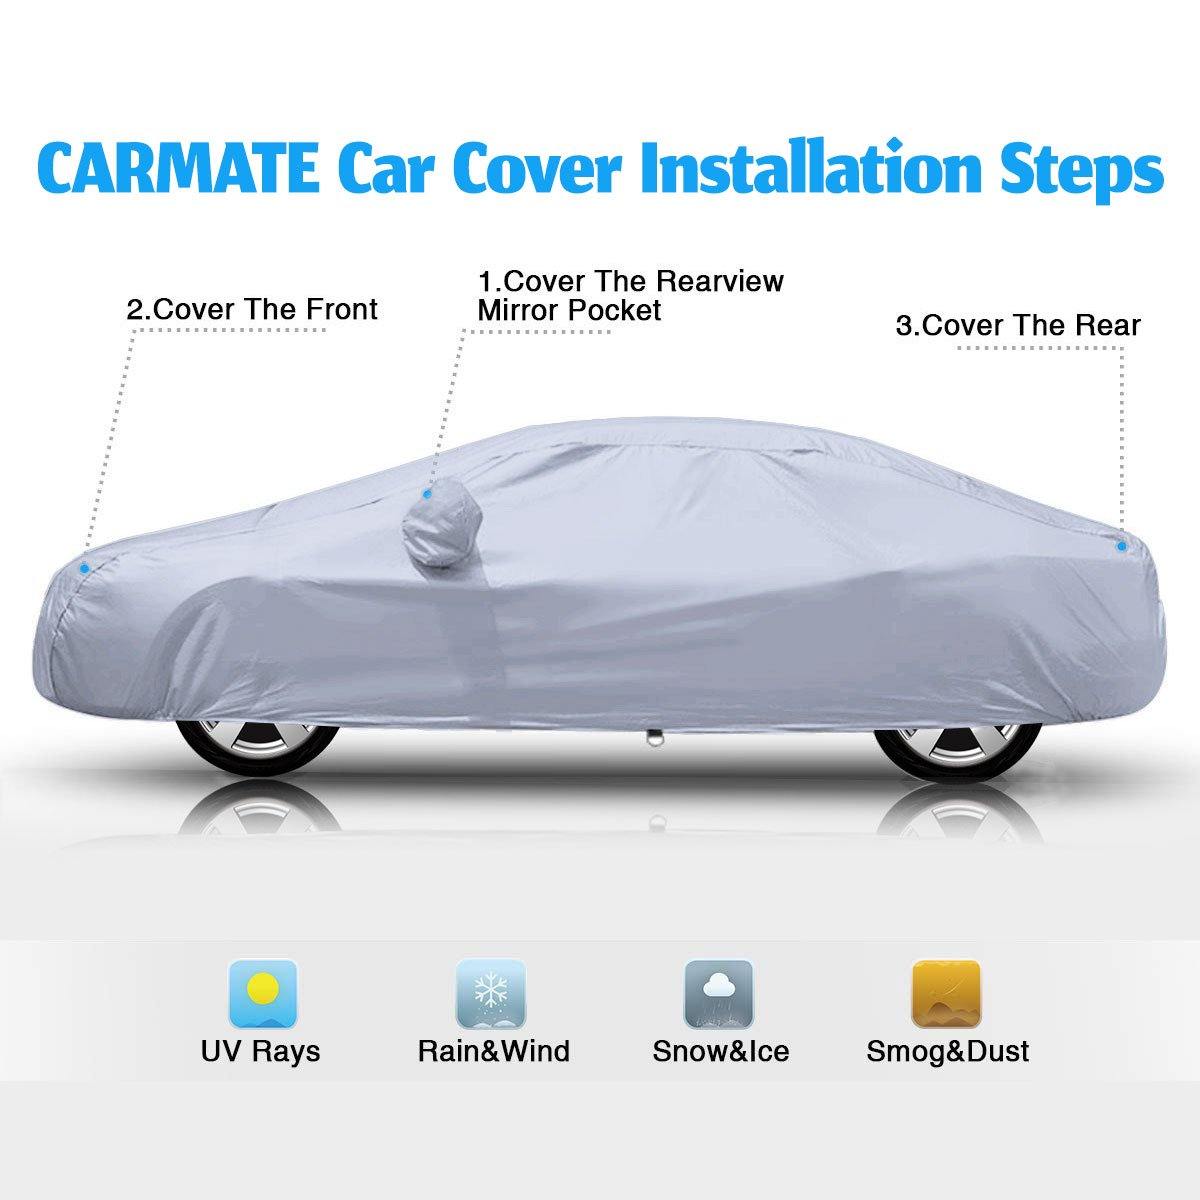 Carmate Premium Car Body Cover Silver Matty (Silver) for  BMW - 520D - CARMATE®